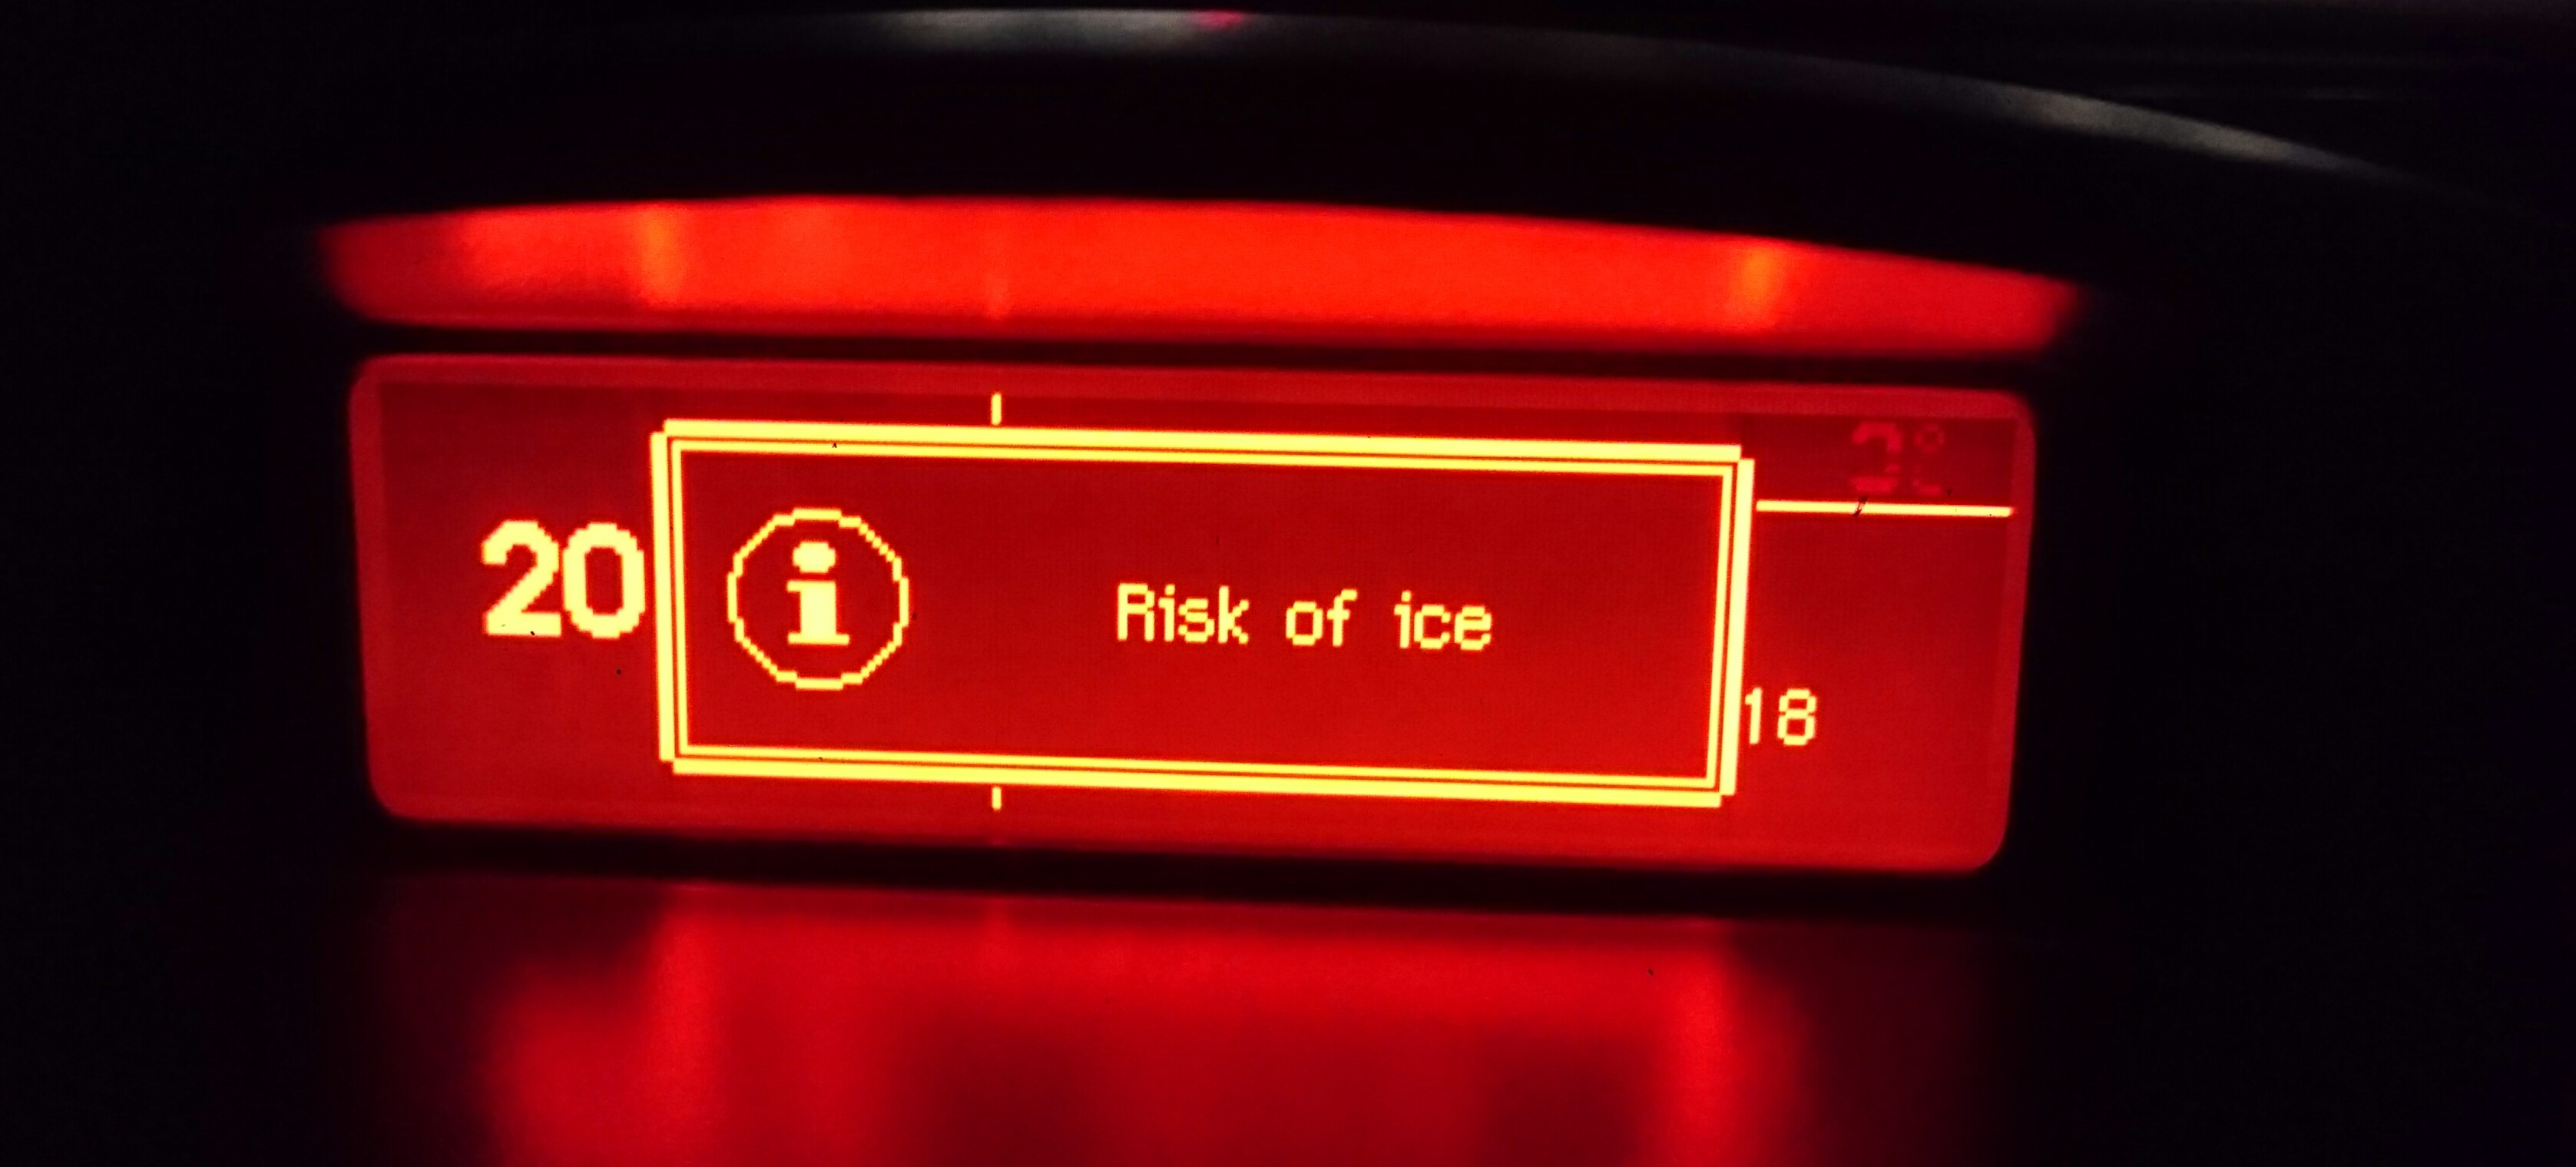 九州大分とて『Risk of ice』のシーズン到来です。